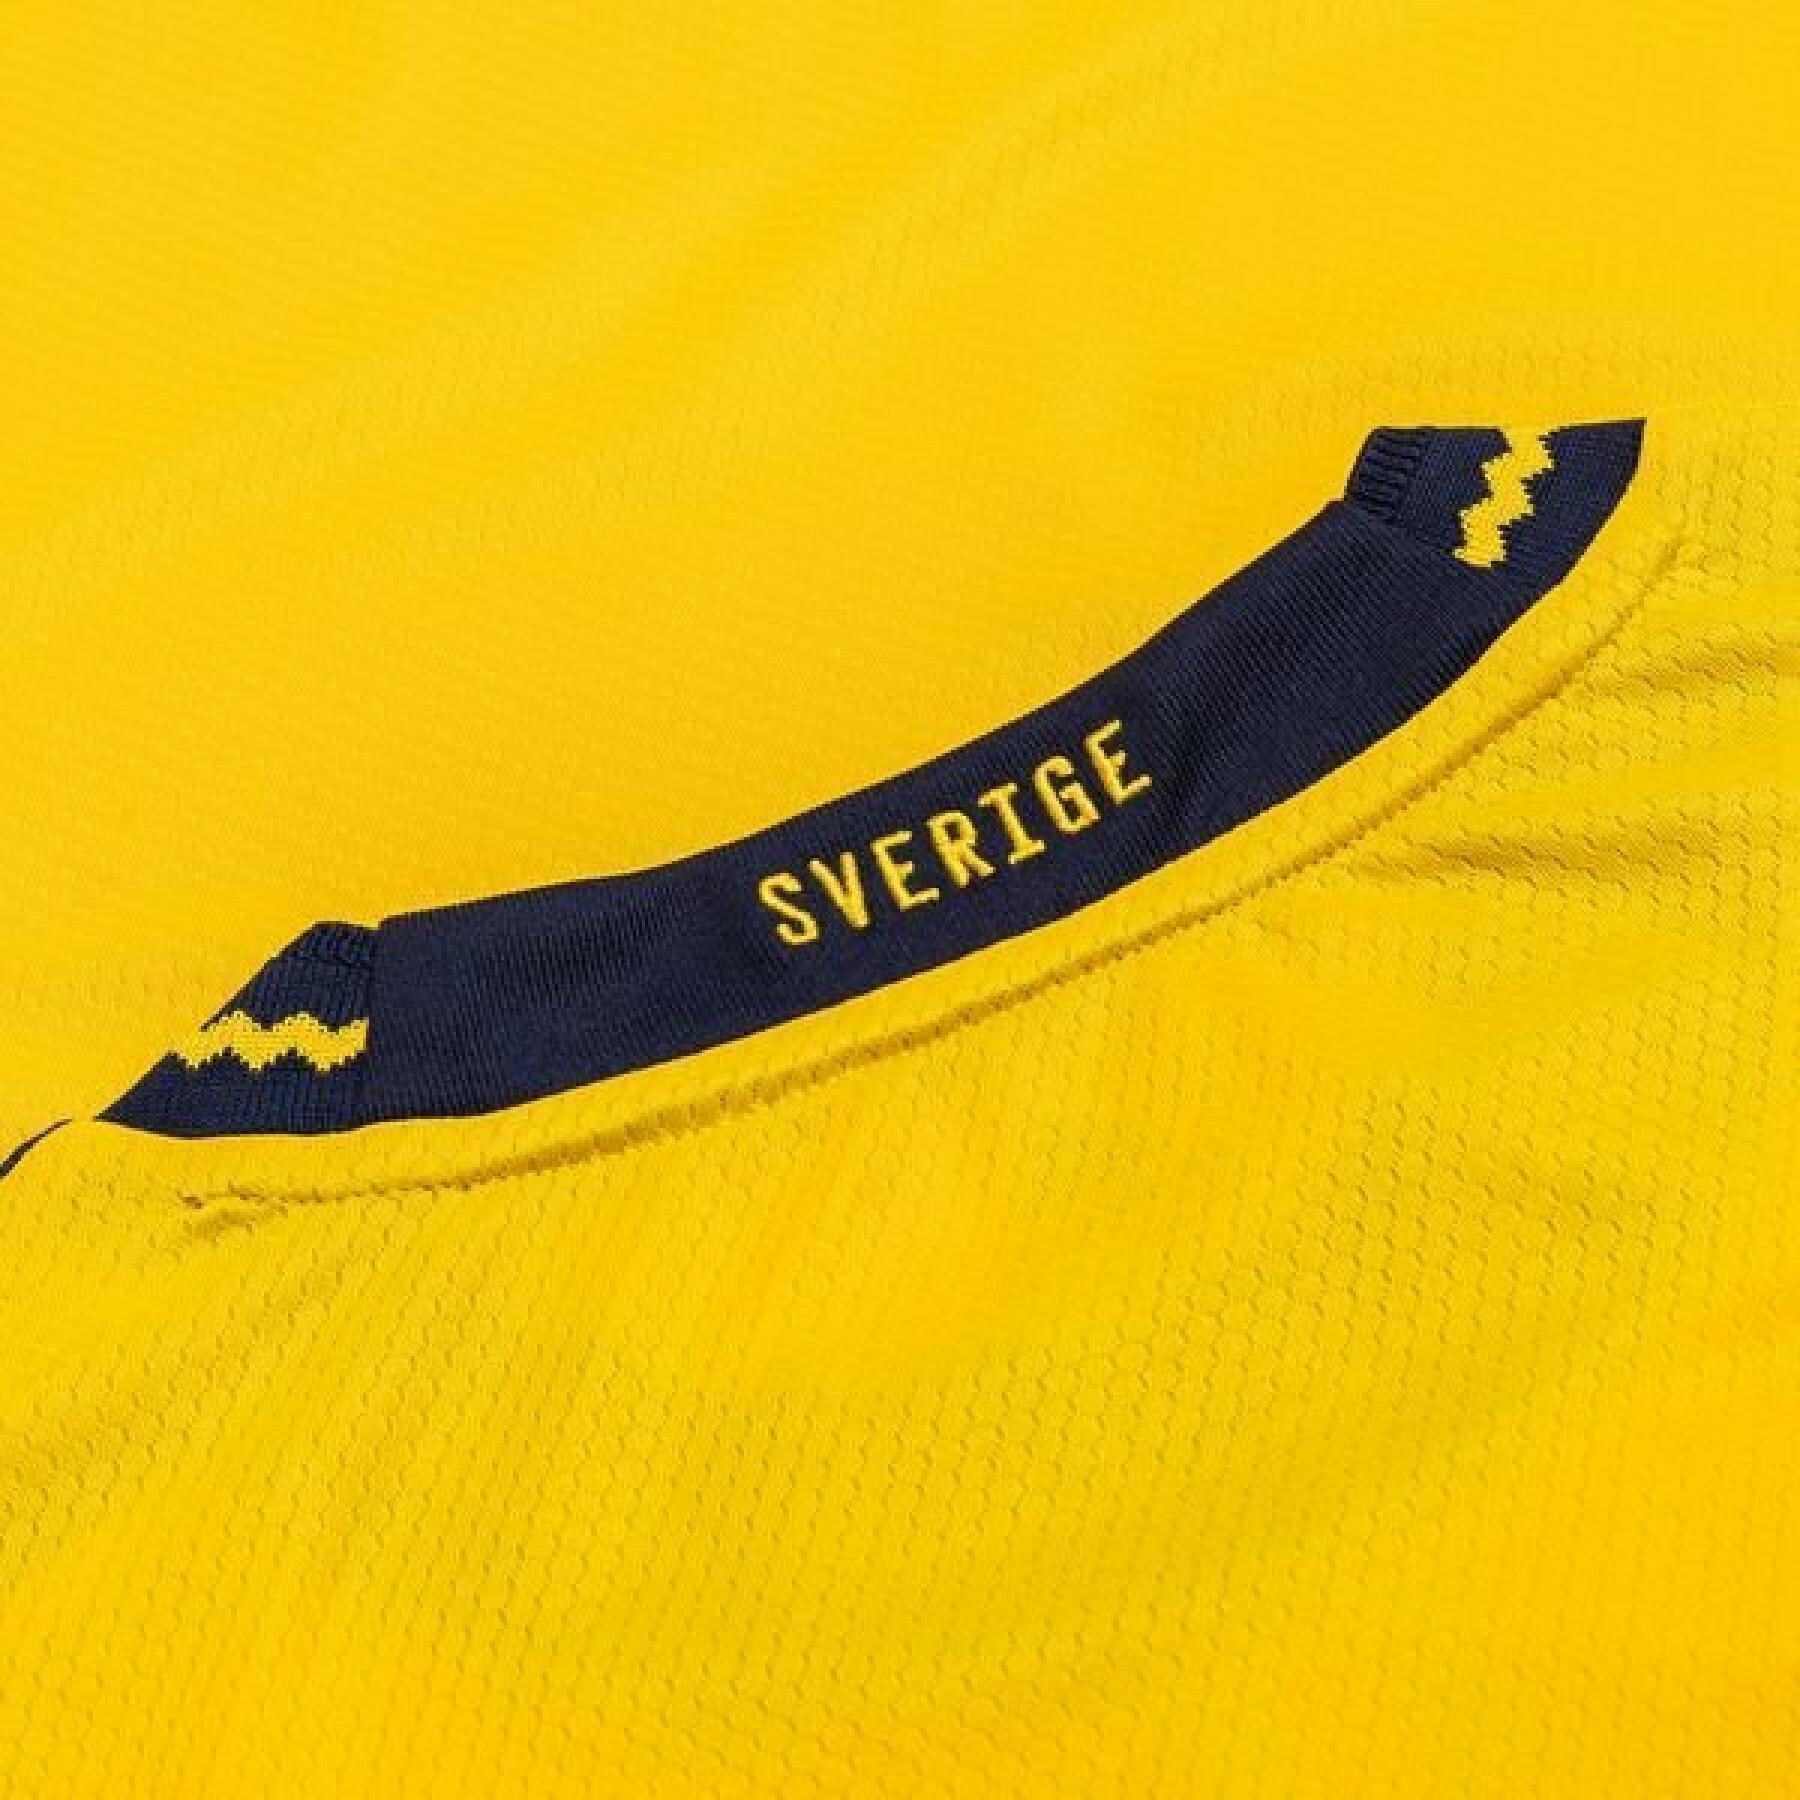 Camiseta primera equipación mujer Suède Euro Féminin 2022 Primeblue